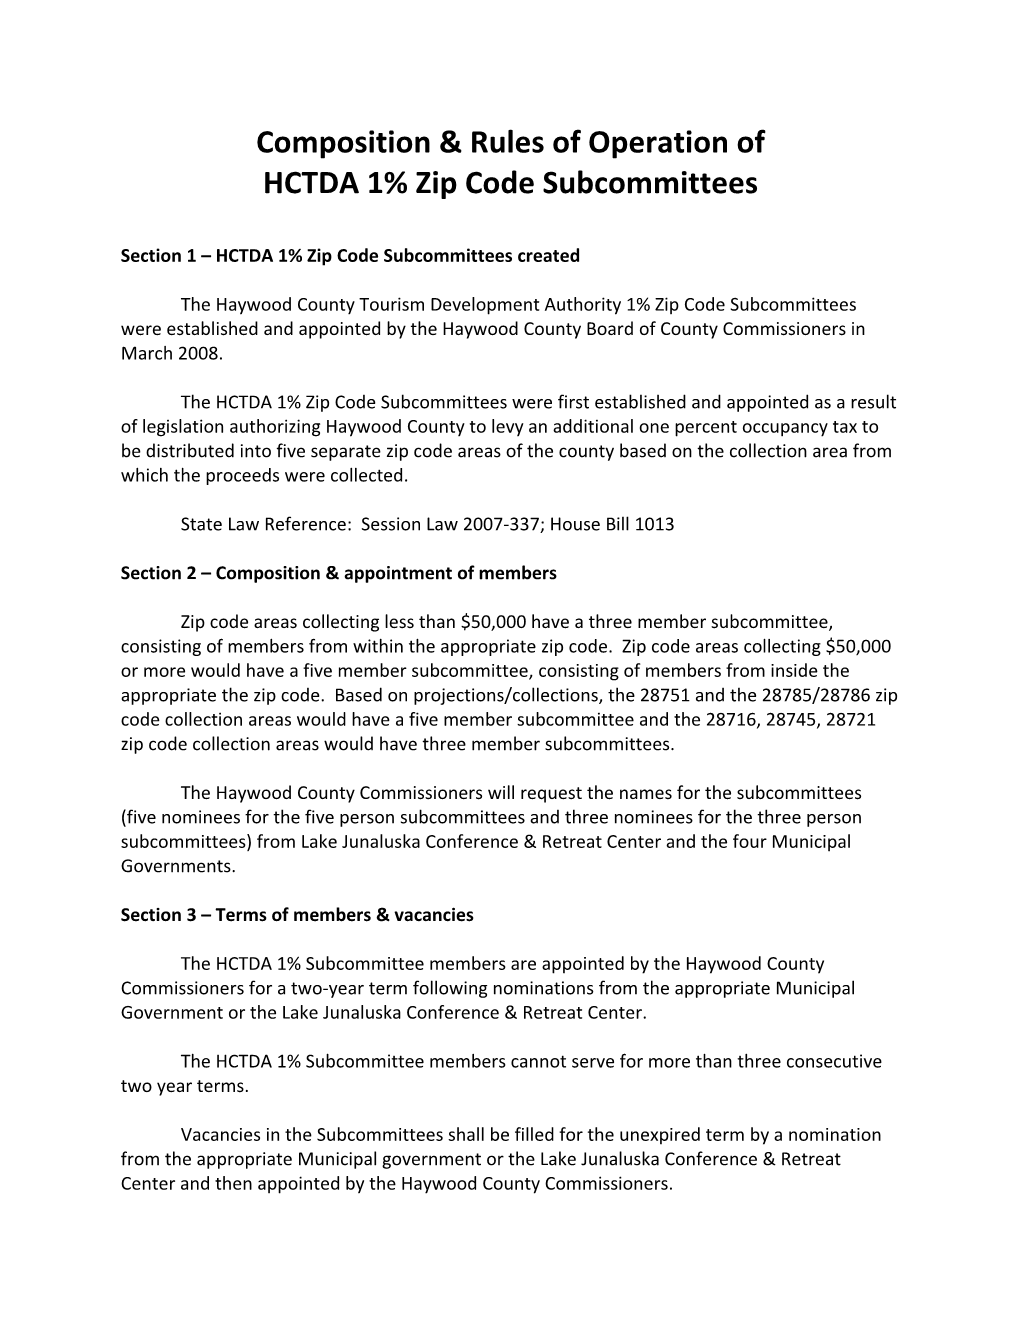 HCTDA 1% Zip Code Subcommittees